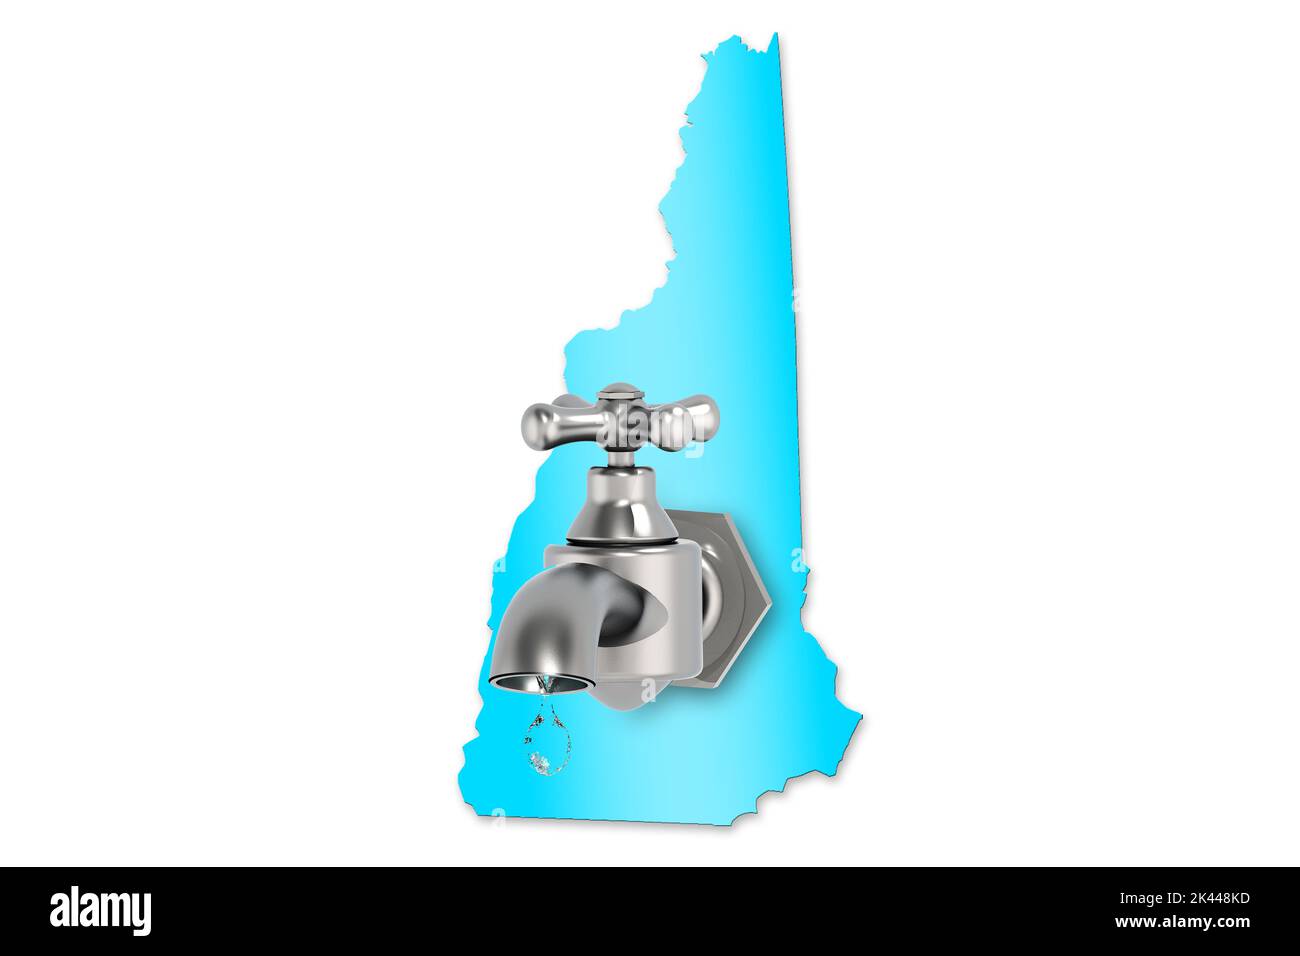 Carte du New Hampshire avec robinet d'eau pour le concept de pénurie d'eau, rendu 3D Banque D'Images